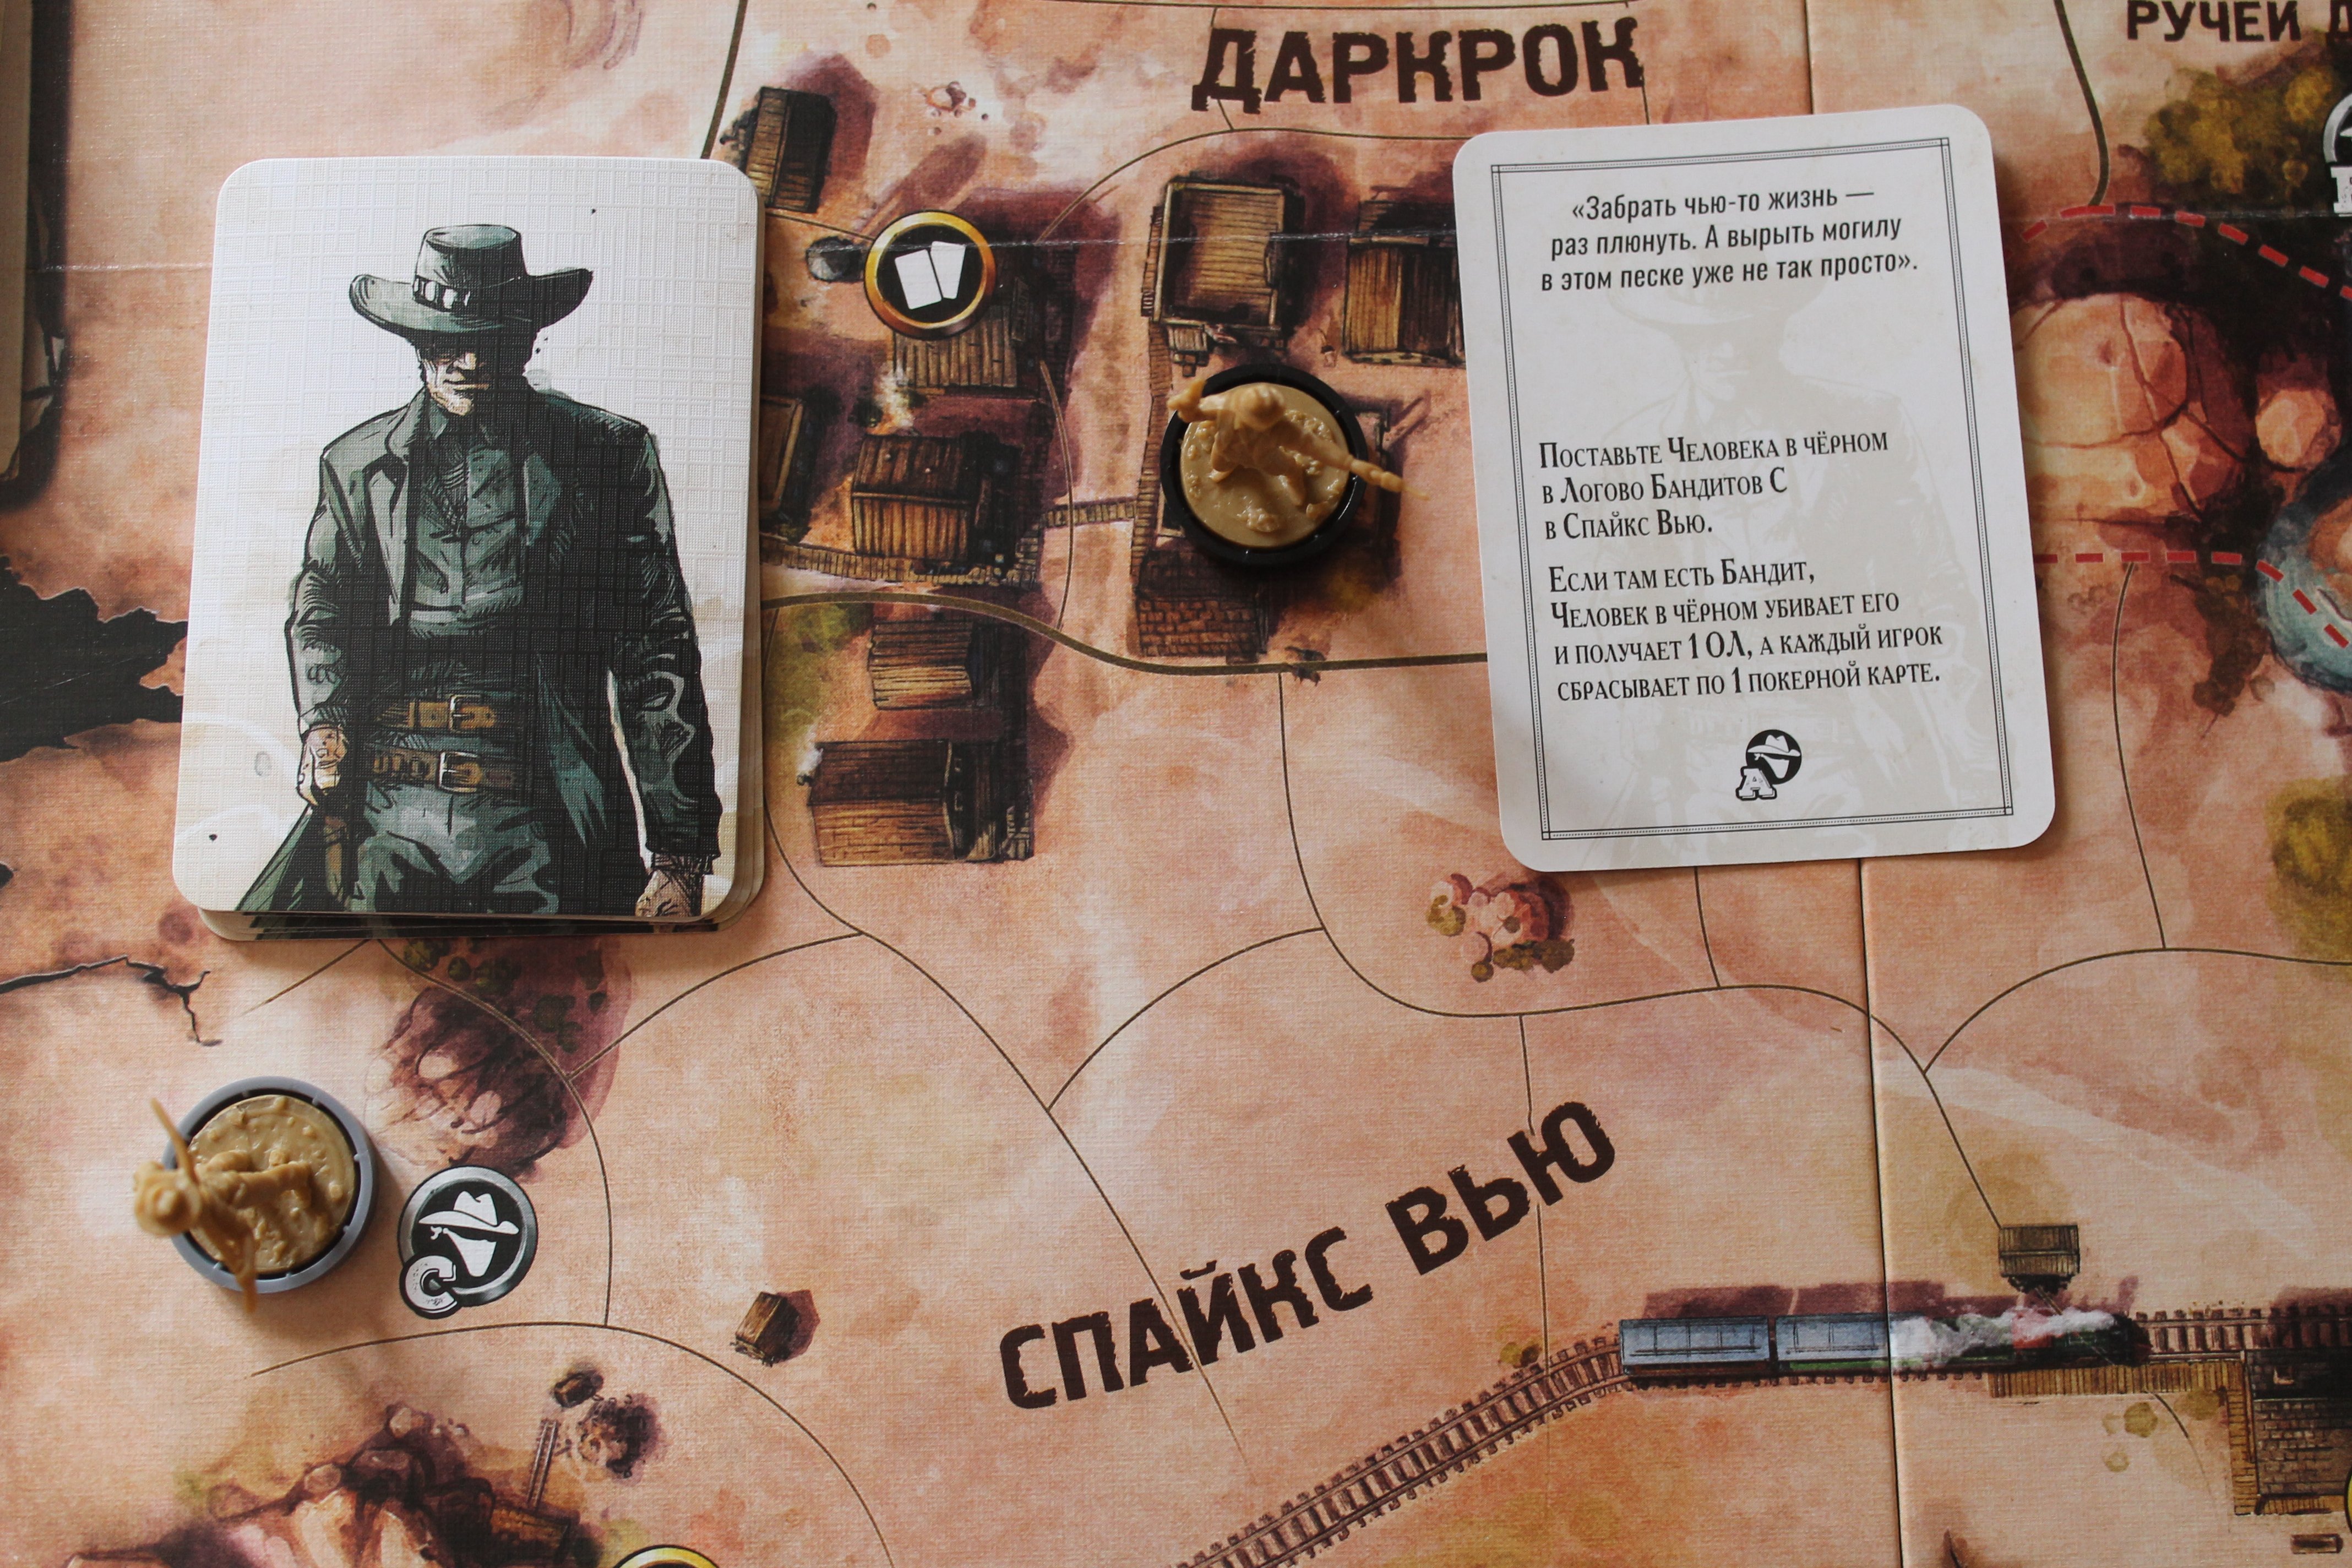 В этот ход на карте Человека в Чёрном есть указание отправиться в бандитское логово в Спайкс Вью. В результате, нейтральный бандит будет обезврежен, Человек в Чёрном получит 1 ОЛ, а каждому игроку придётся сбросить покерную карту.